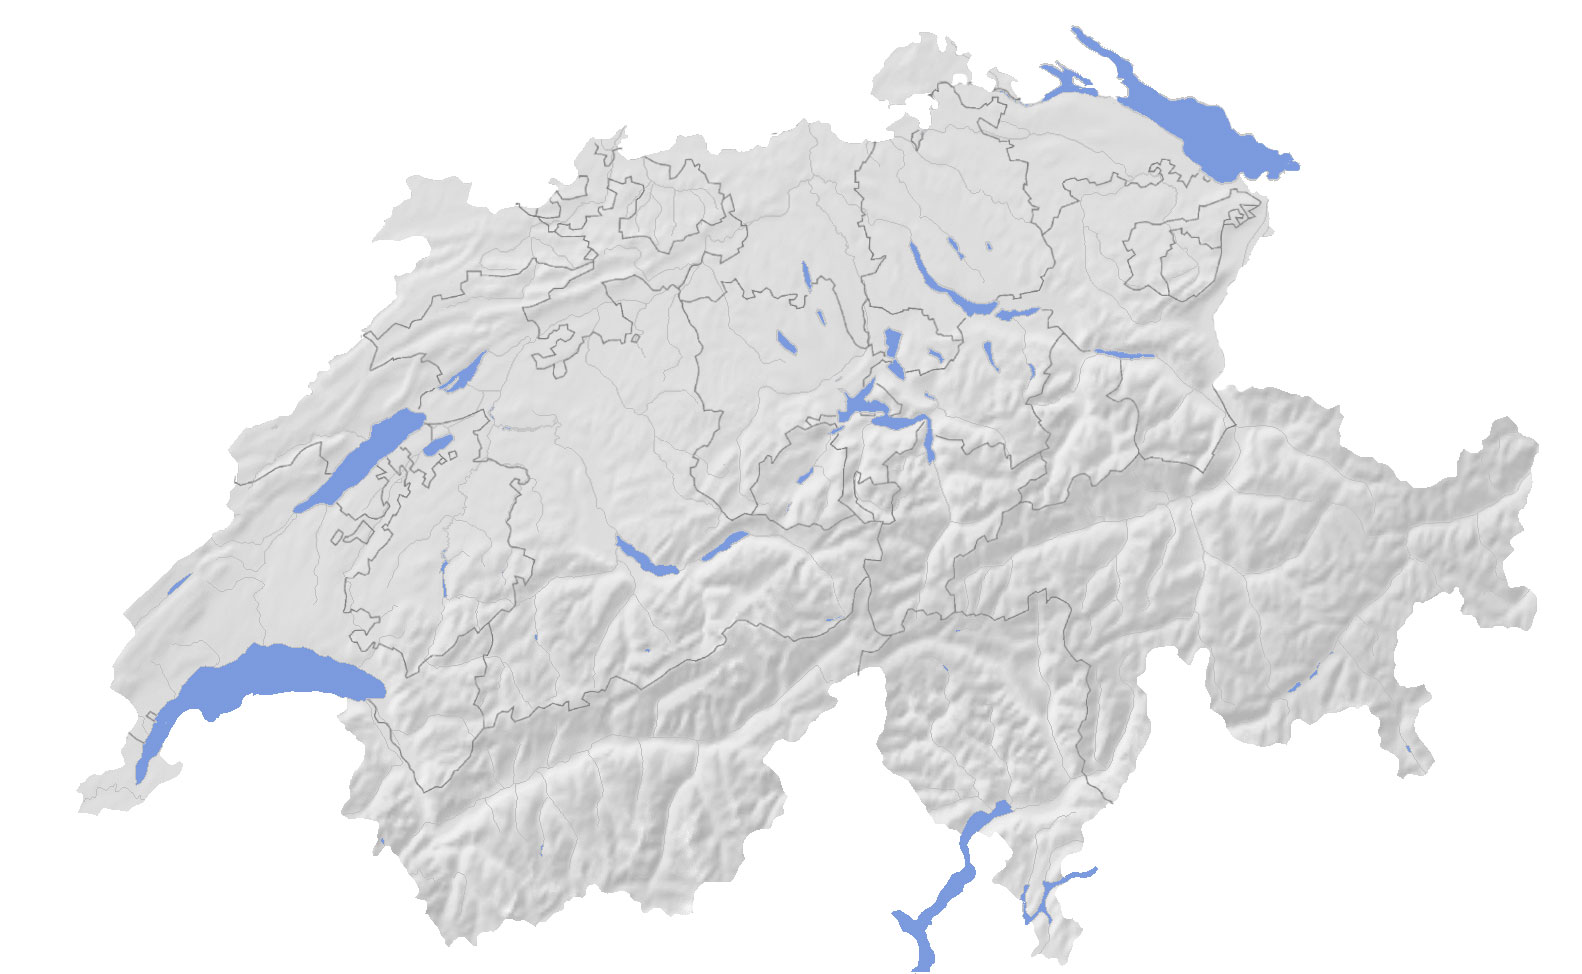 Schweiz Bern Sprachgebiete Land Gewässer Klima Kurorte Original Karte von 1892 